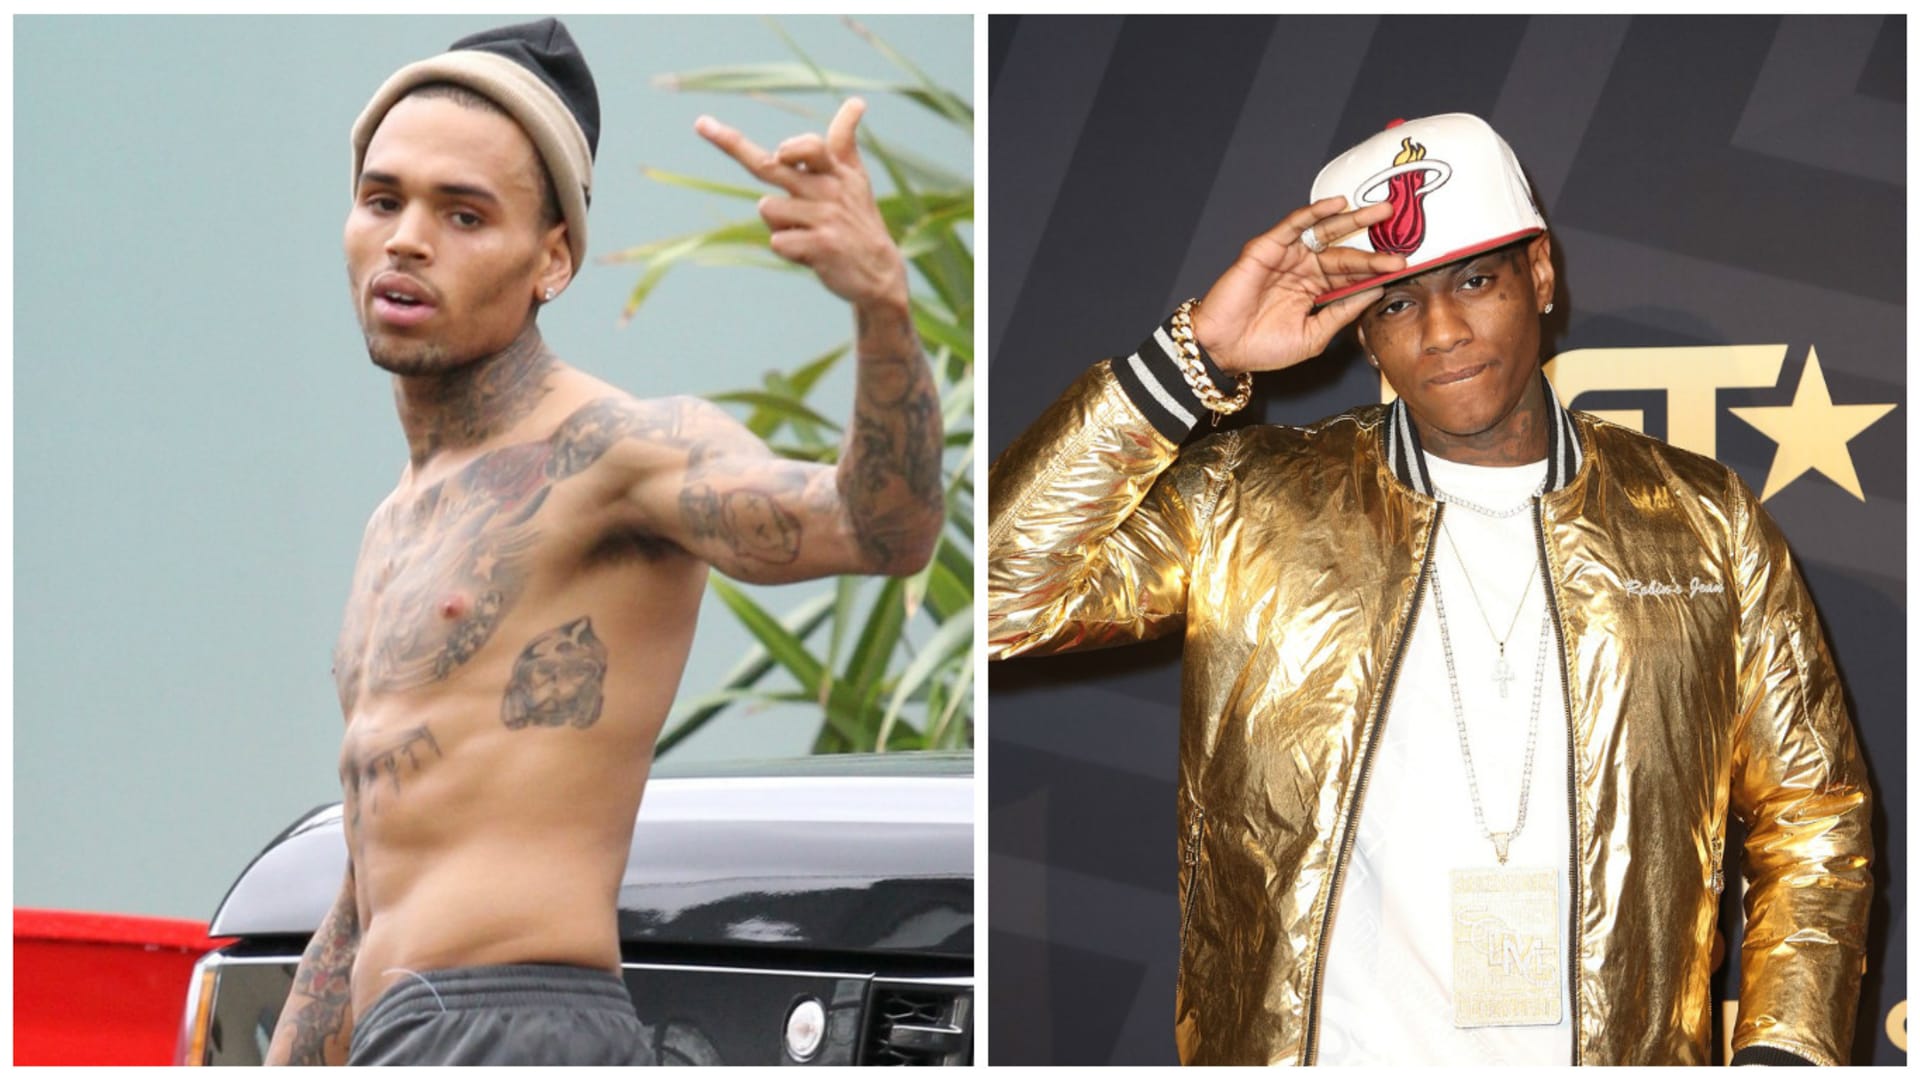 Chris Brown vs. Soulja Boy